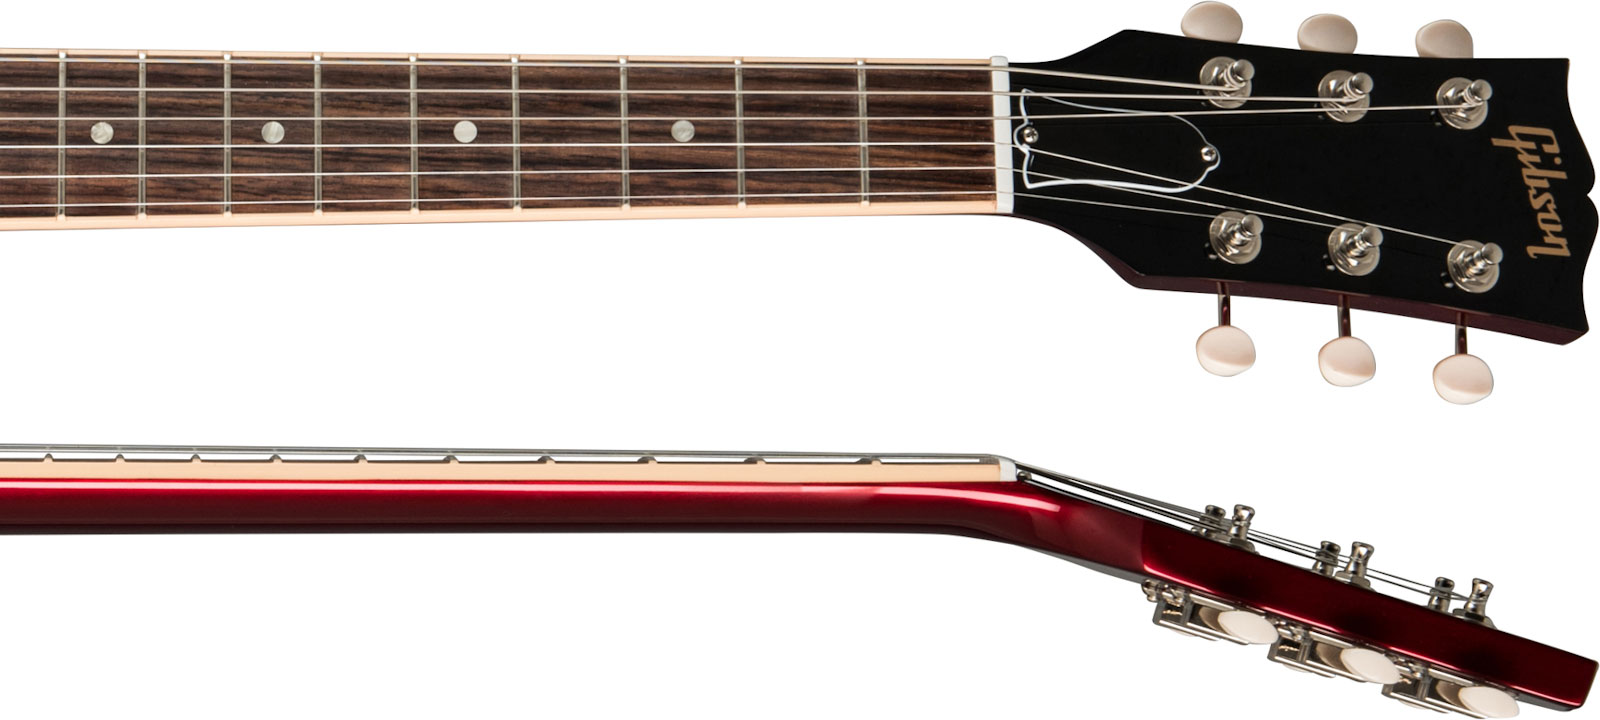 Gibson Sp Special Original 2p90 Ht Rw - Vintage Sparkling Burgundy - Retro-Rock-E-Gitarre - Variation 3